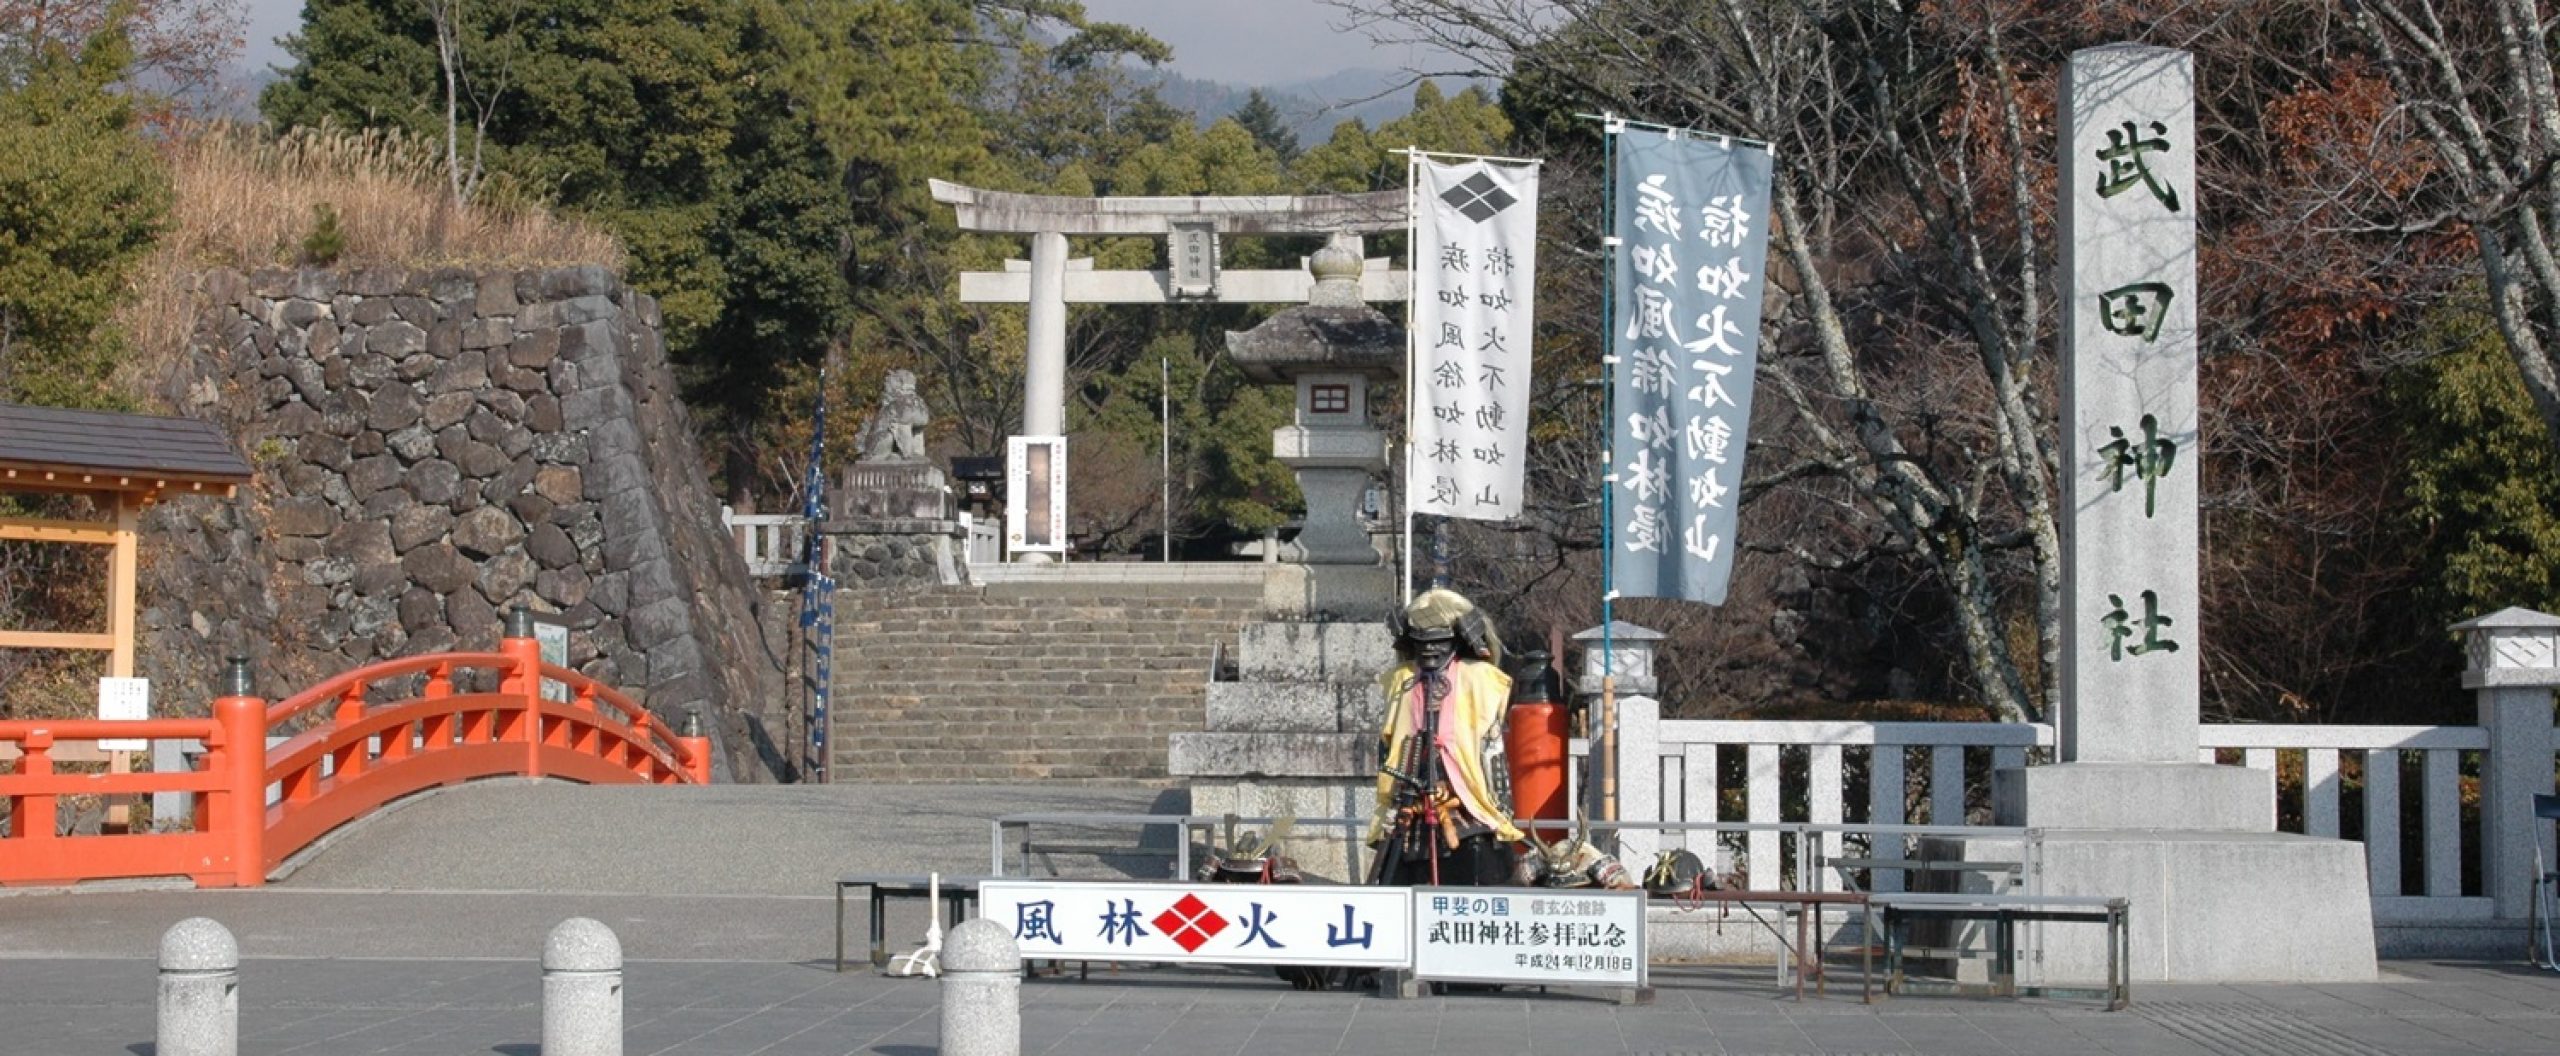 お宮参り・七五三の写真なら武田神社